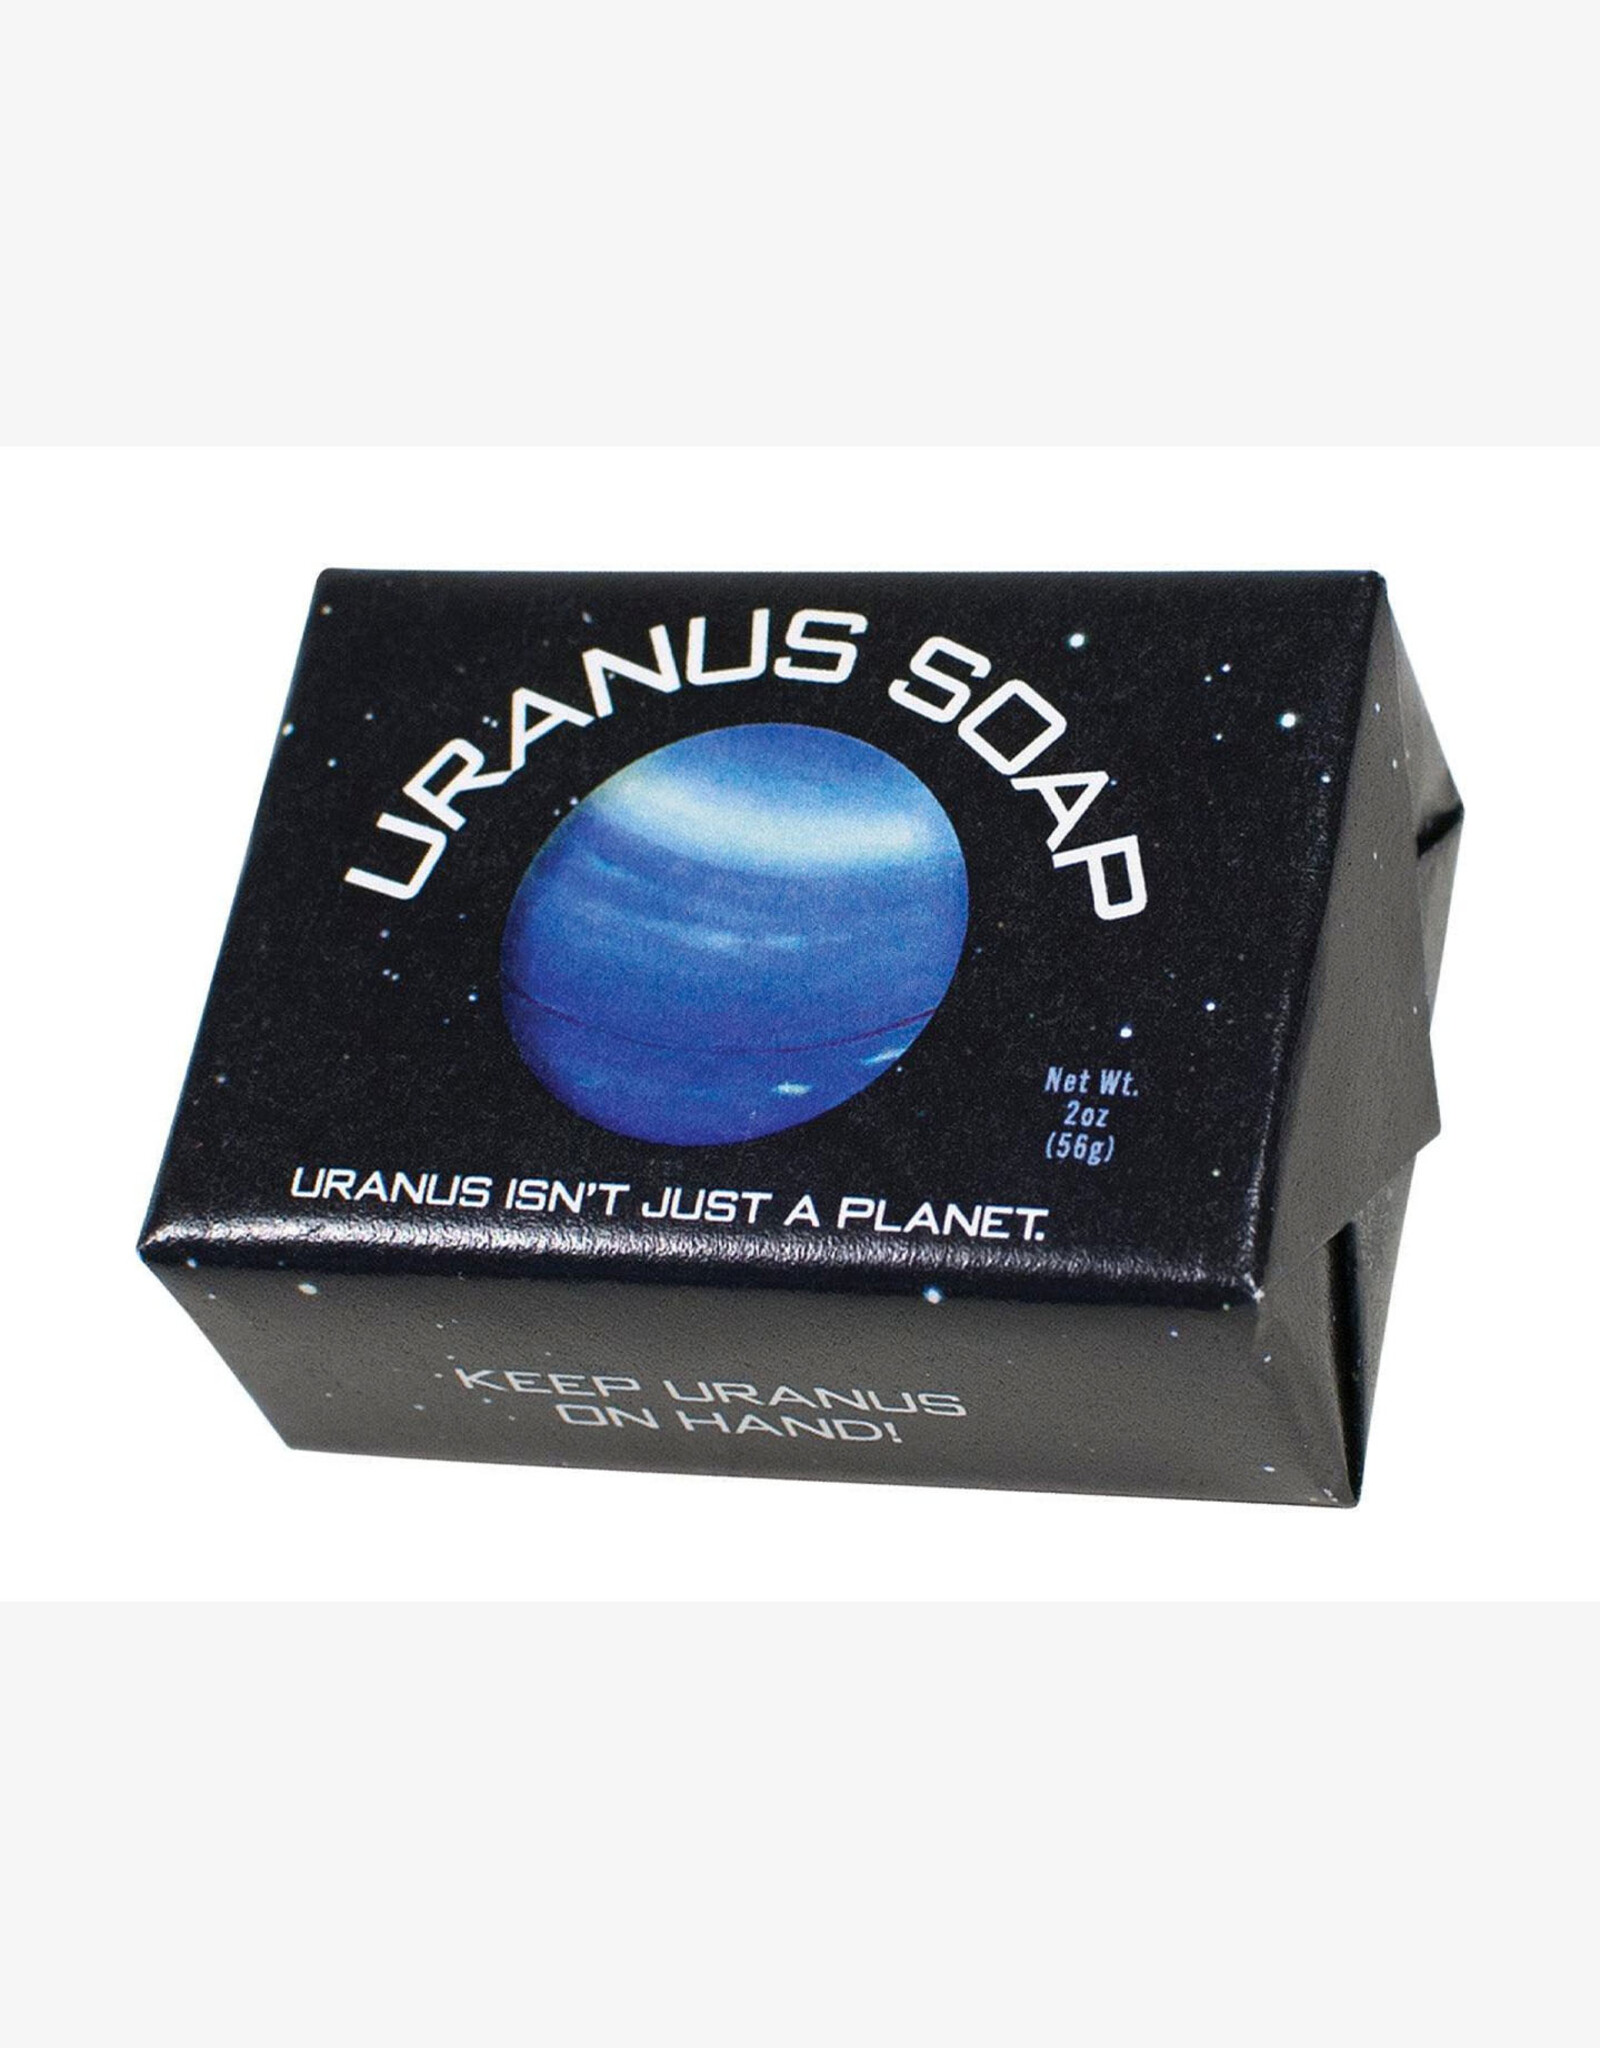 Uranus Soap